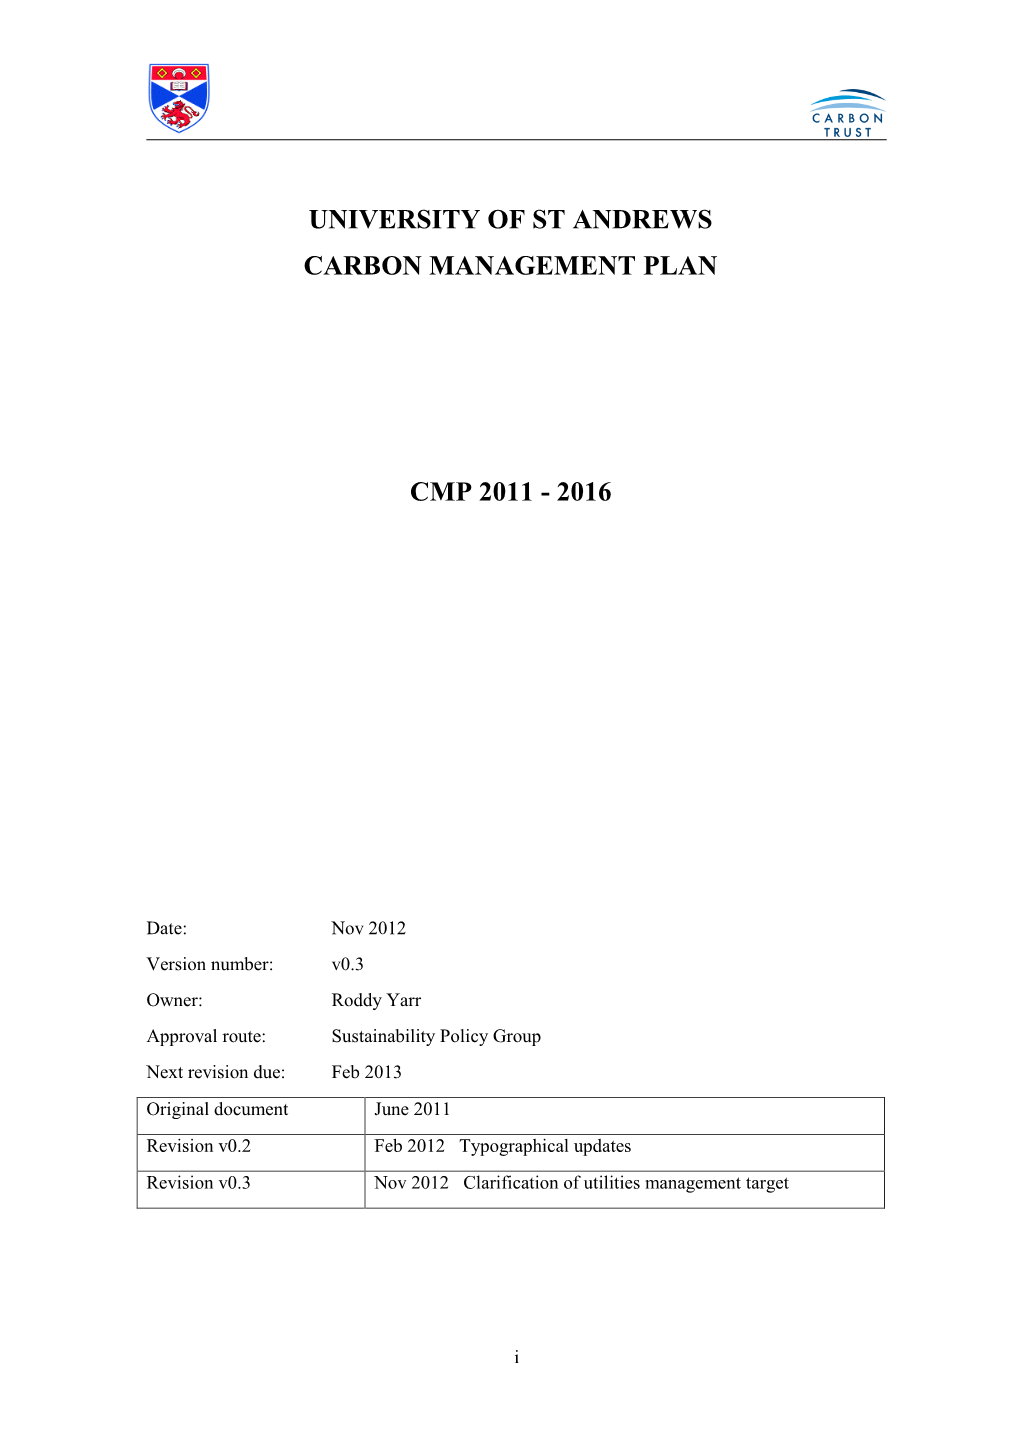 University of St Andrews Carbon Management Plan Cmp 2011